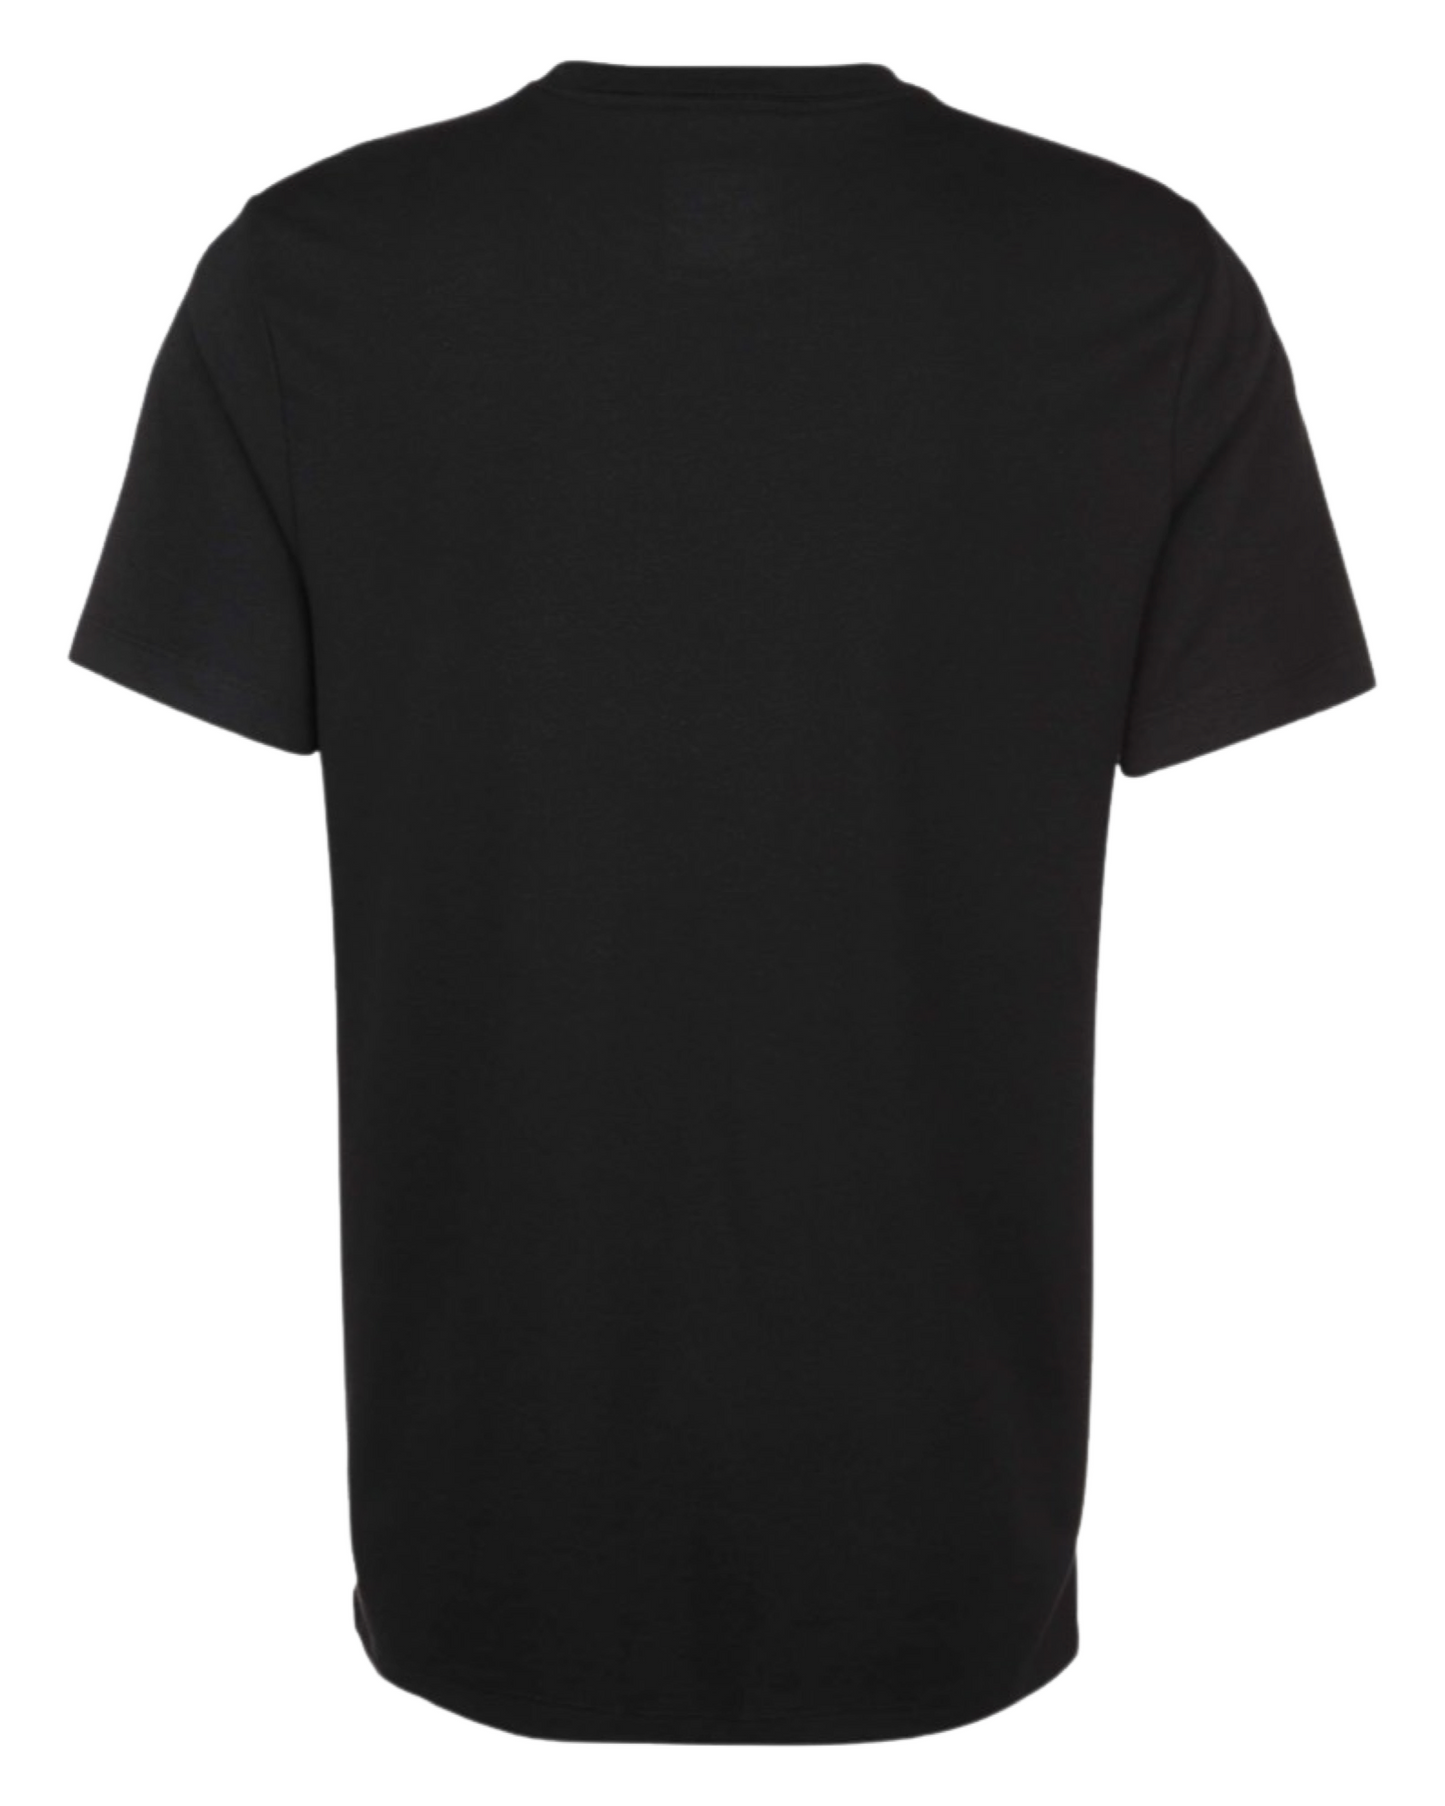 Nike 47er Kinder T-Shirt schwarz